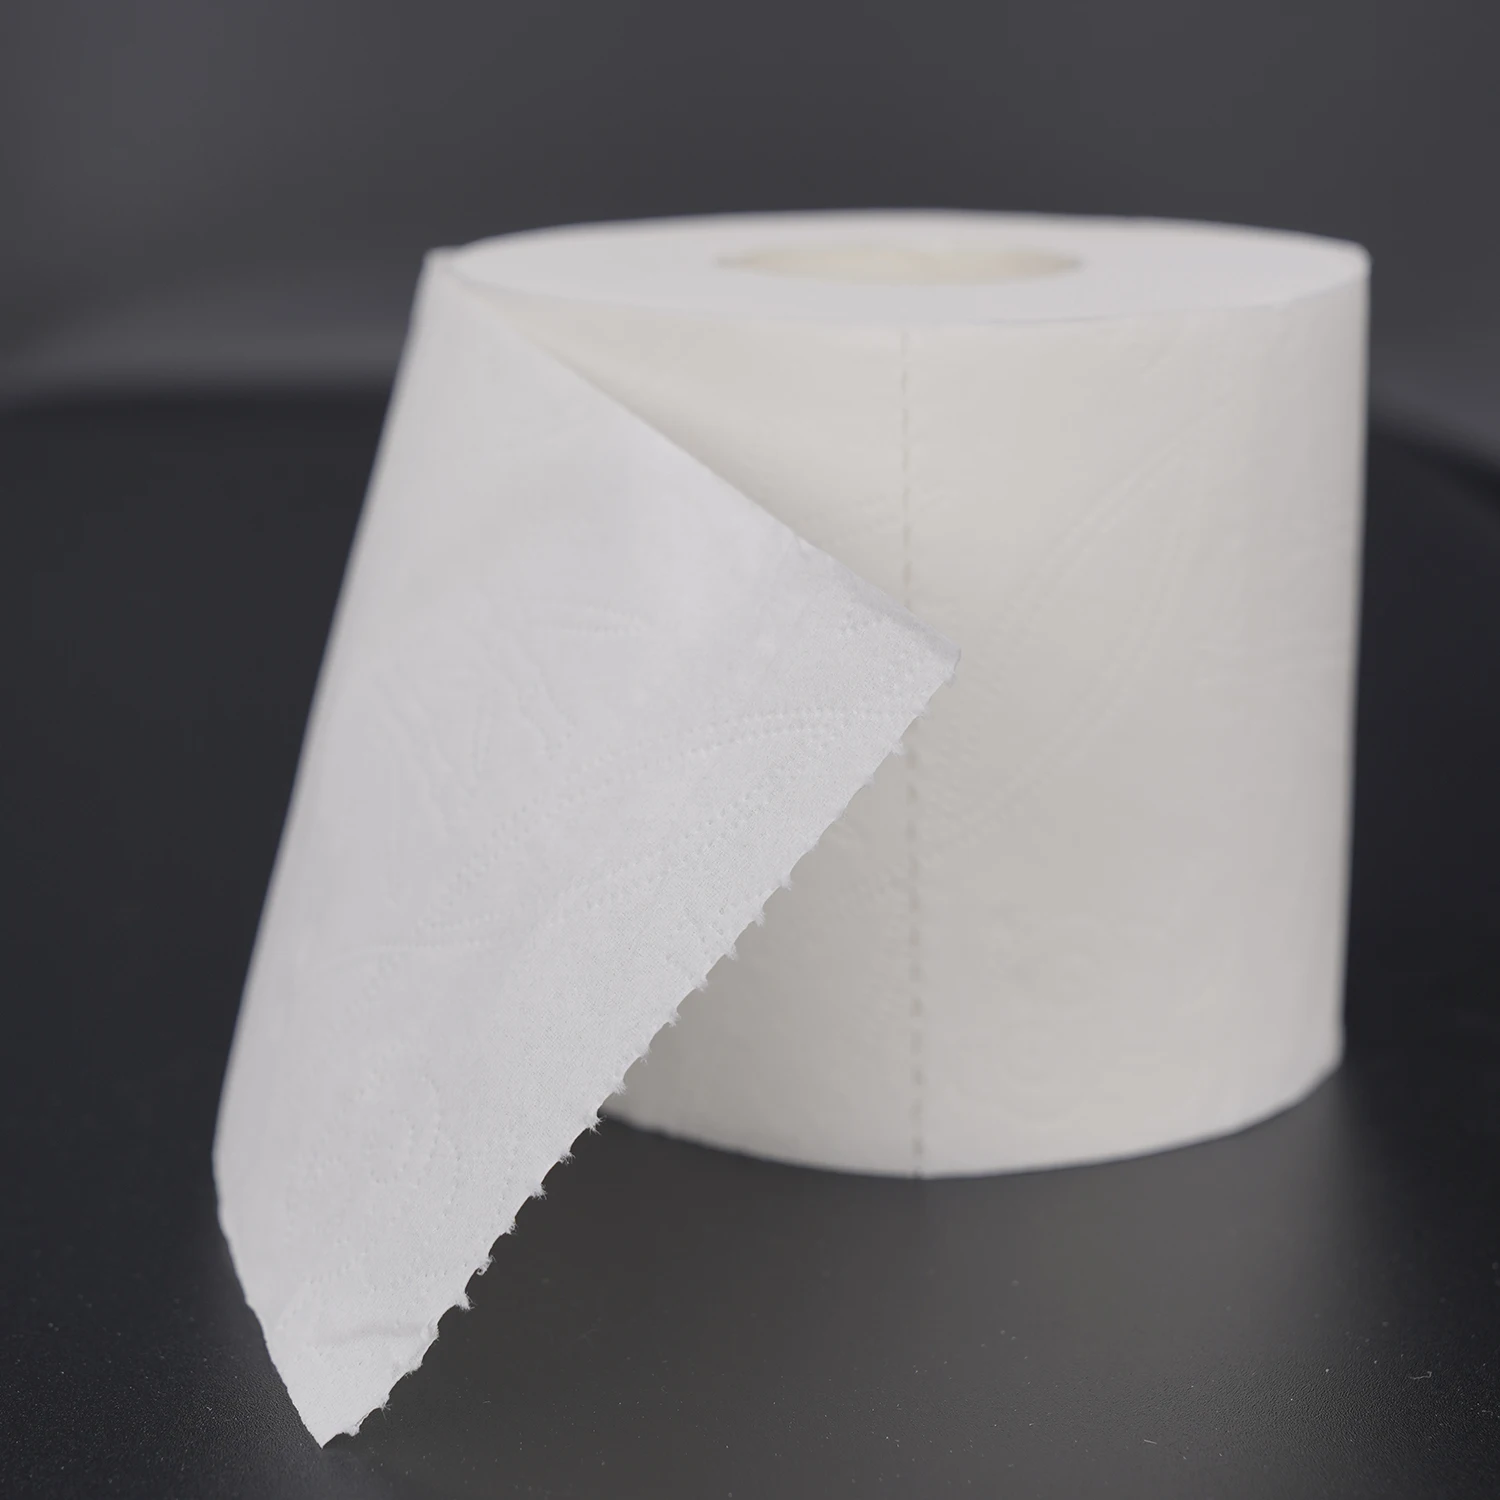 Недорогая рельефная туалетная бумага от производителя, рулон туалетной бумаги из натуральной бамбуковой целлюлозы